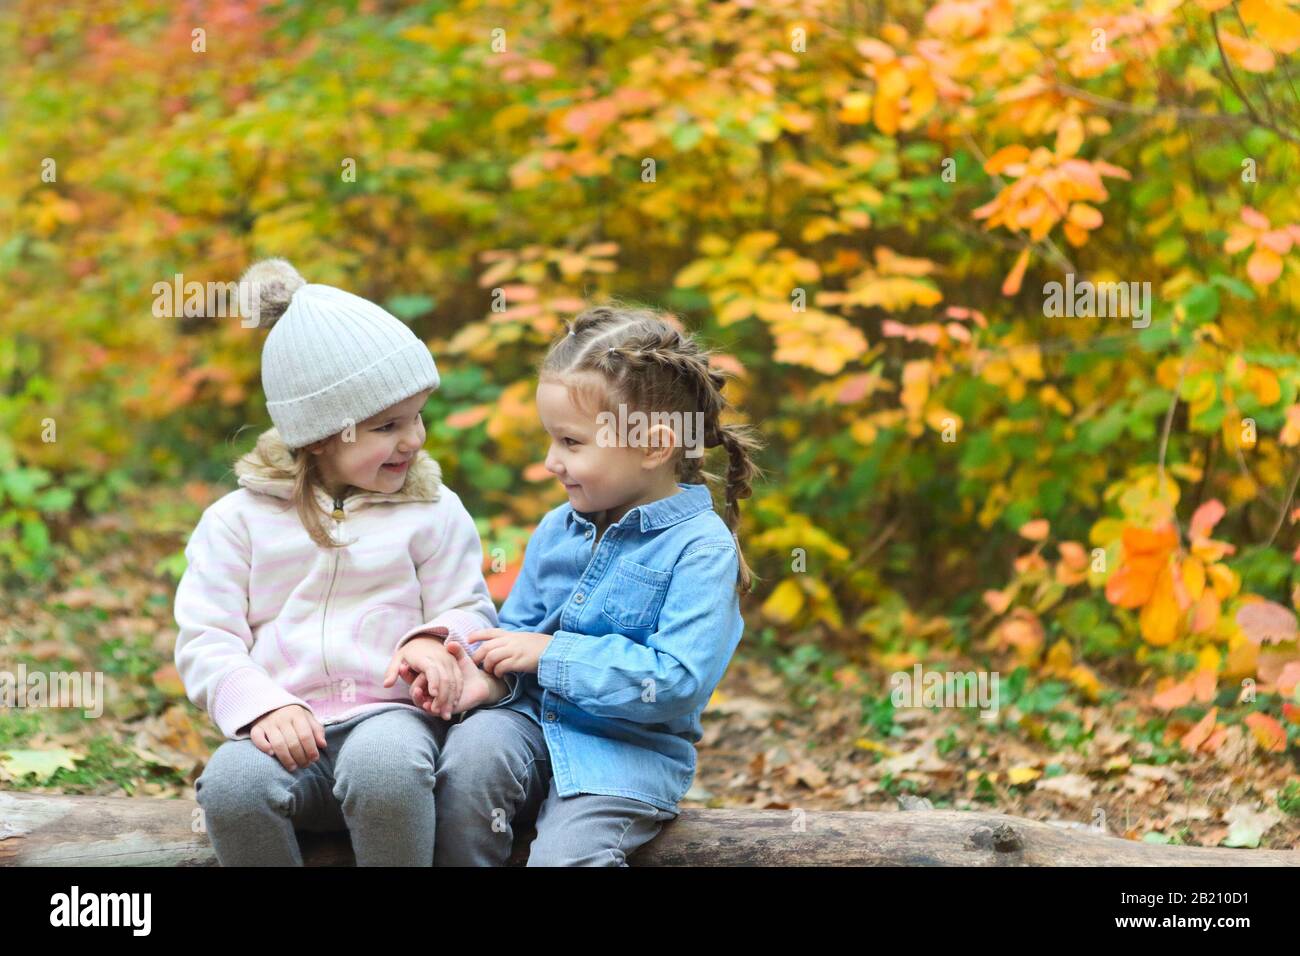 Les petites filles drôles en guerre portent assis sur le sourire de bois et se regardant l'un l'autre avec le feuillage coloré des plantes Banque D'Images